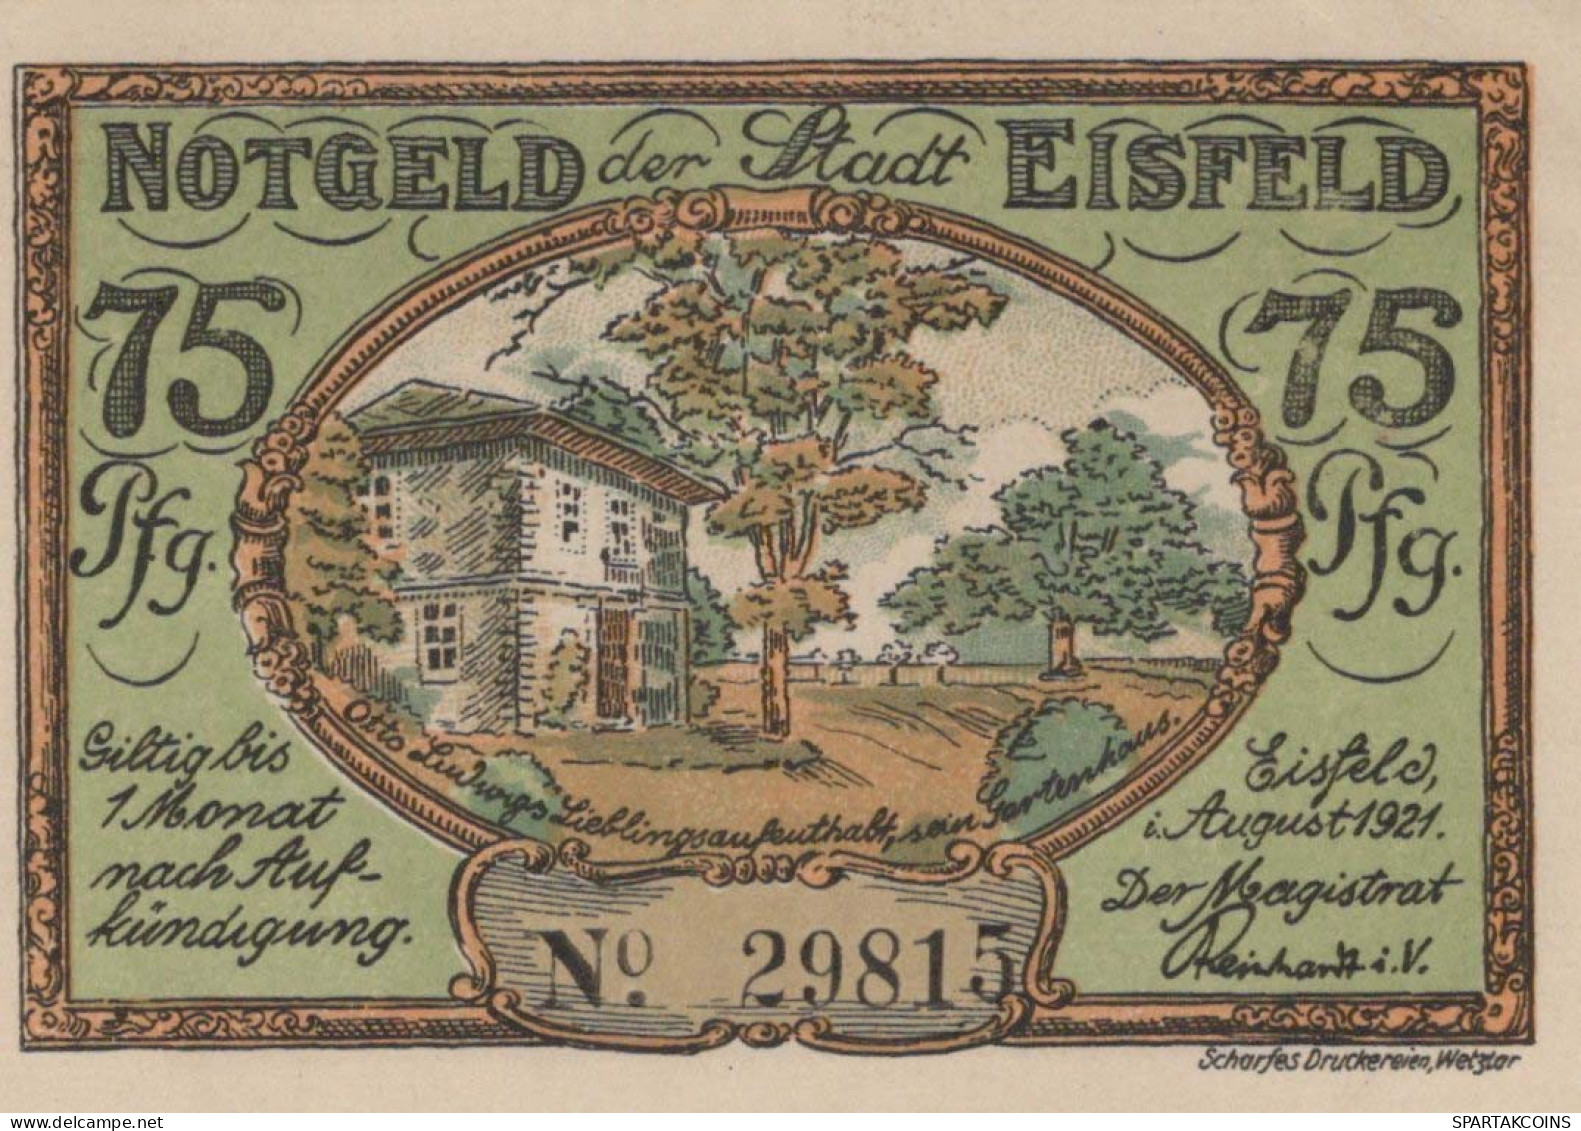 75 PFENNIG 1921 Stadt EISFELD Thuringia UNC DEUTSCHLAND Notgeld Banknote #PB148 - [11] Emissions Locales